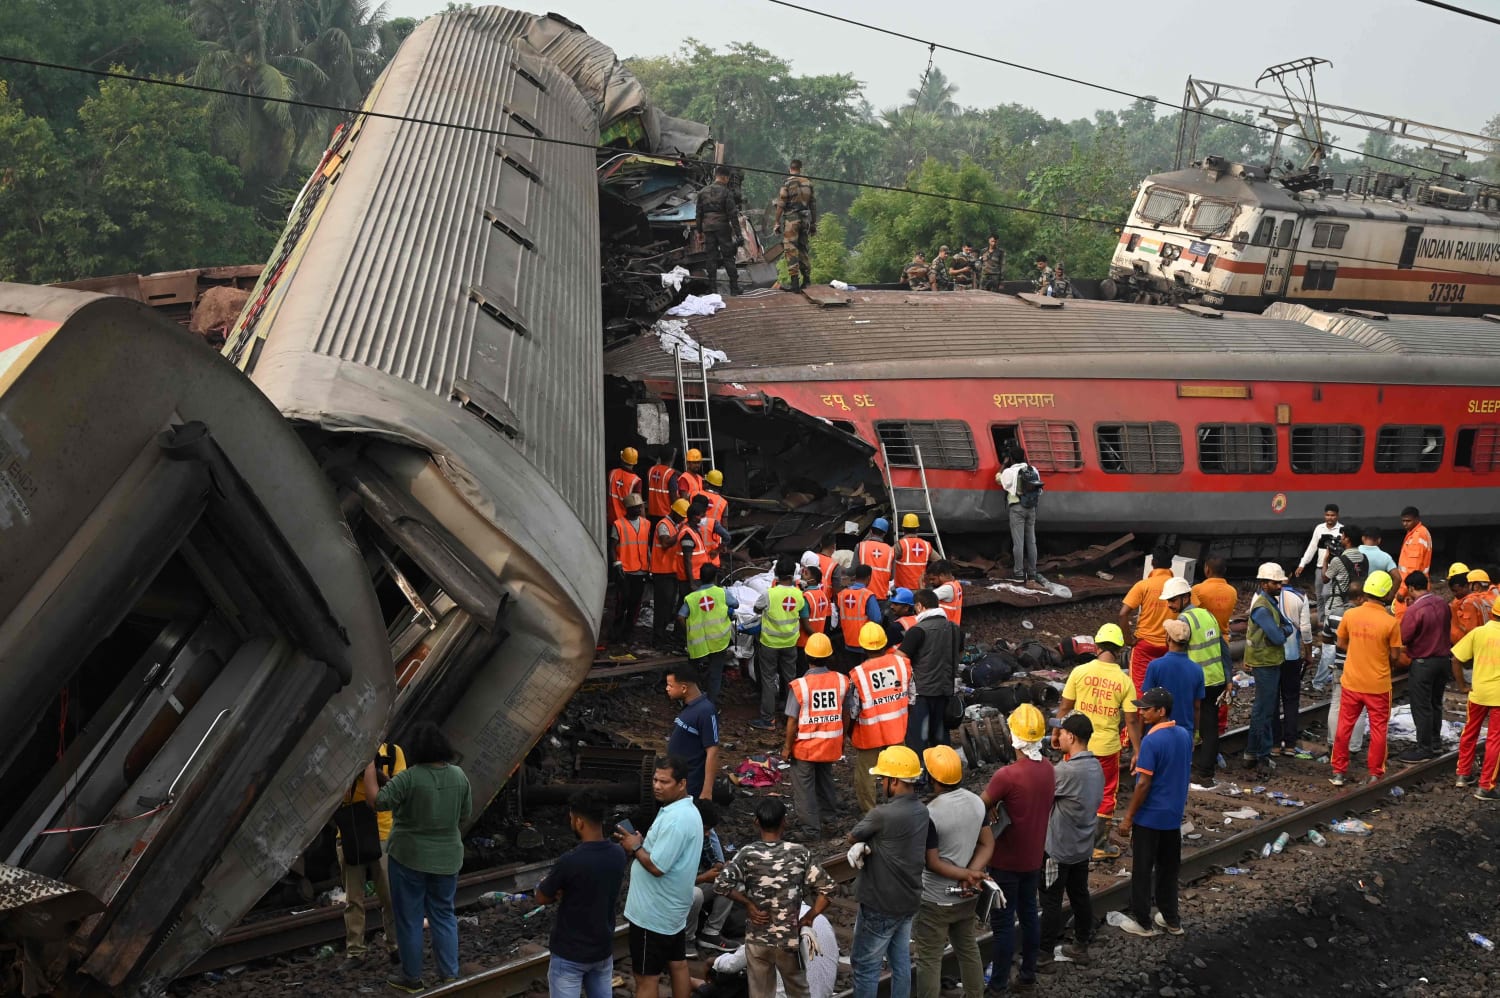 لا يزال سبب تحطم القطار الهندي الذي أودى بحياة المئات غير معروف ، حيث يقول المسؤولون إن جهود الإنقاذ قد اكتملت